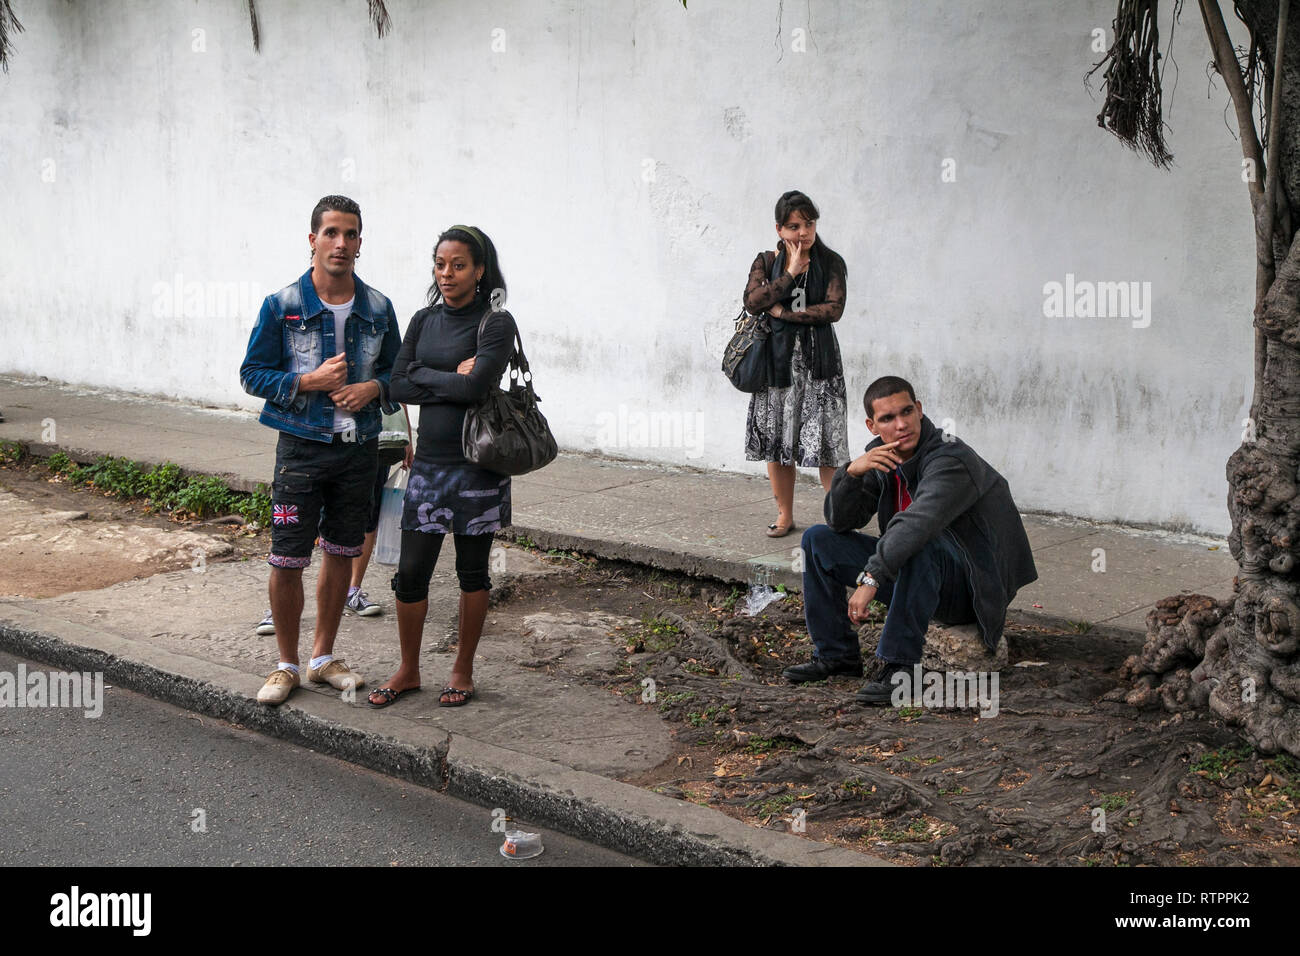 L'Avana, Cuba - 18 Gennaio 2013: una vista delle strade della città con il popolo cubano. Le persone in attesa di un autobus alla fermata del bus. Foto Stock